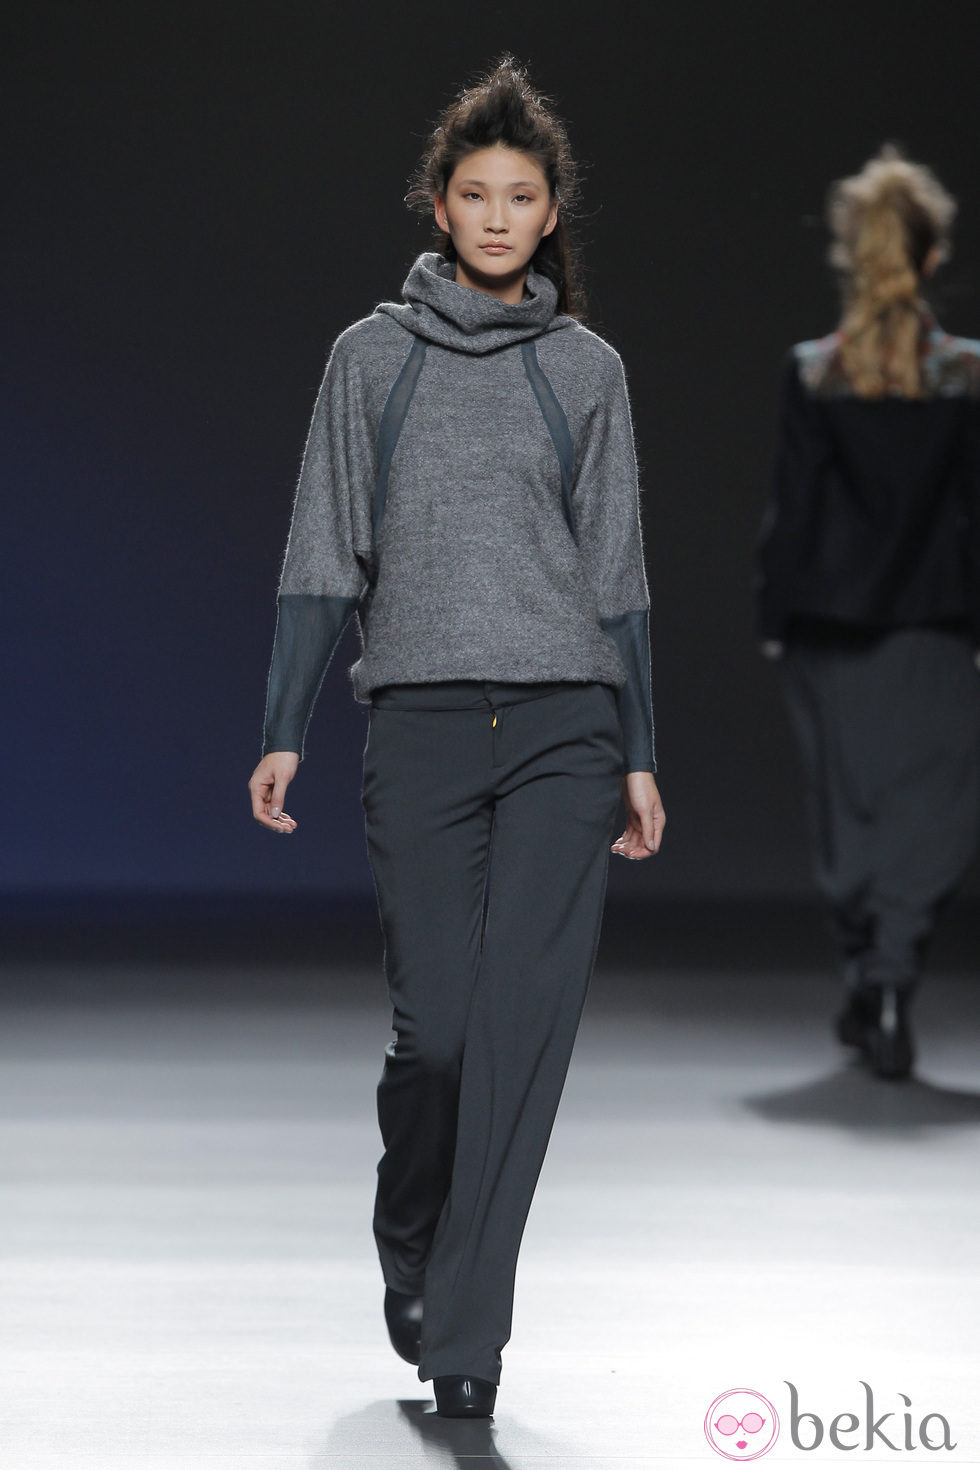 Jersey gris con detalles verdes de la colección otoño/invierno 2013/2014 de Sara Coleman en Madrid Fashion Week